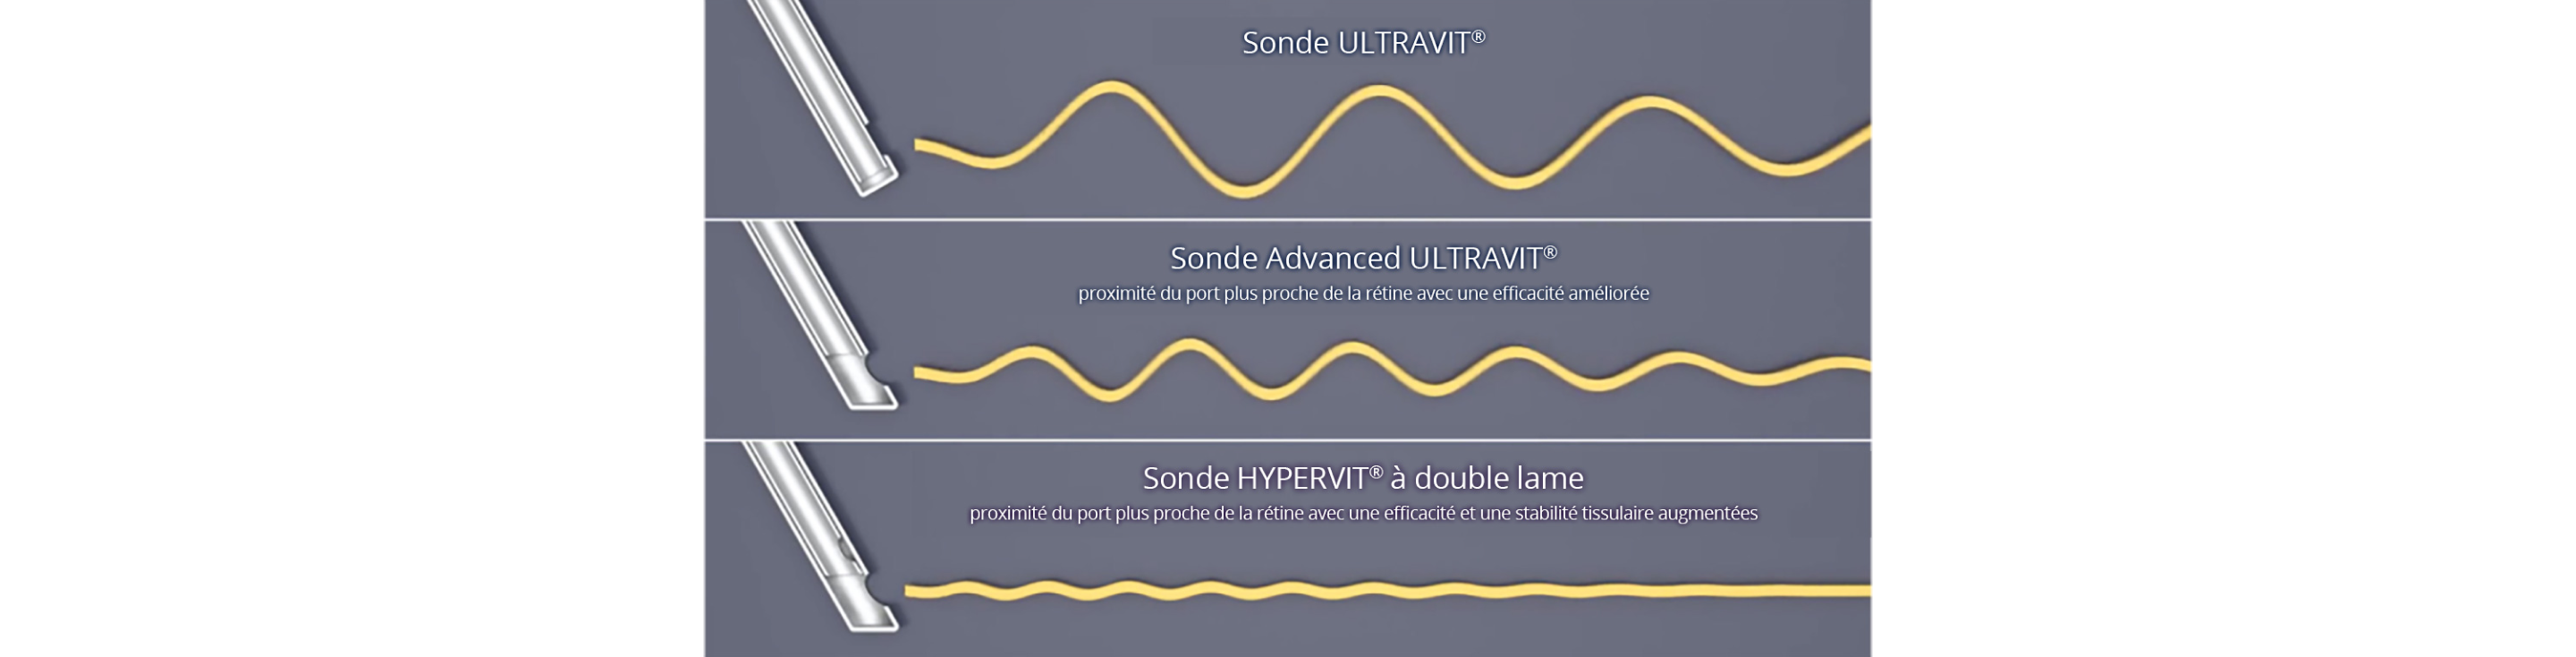 Image comparant la turbulence fluidique de la sonde ULTRAVIT, de la sonde Advanced ULTRAVIT et de la sonde à double lame HYPERVIT. HYPERVIT semble avoir la turbulence fluidique la plus faible. Un bouton de lecture blanc indique qu'il s'agit d'une vidéo.